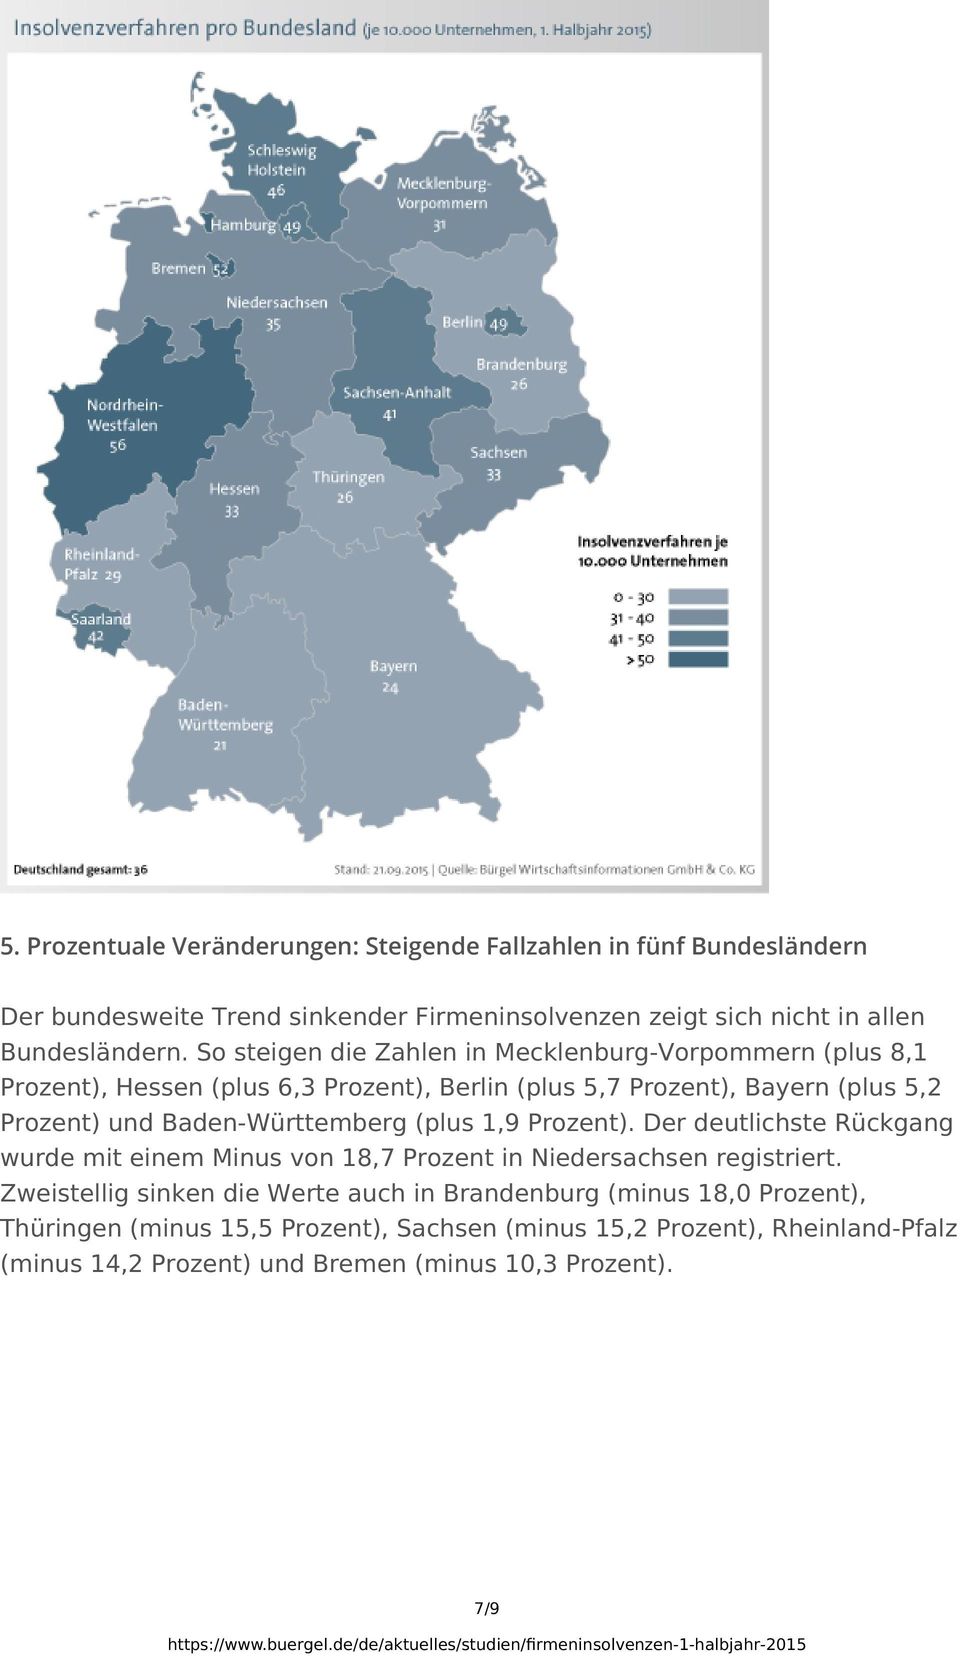 Baden-Württemberg (plus 1,9 Prozent). Der deutlichste Rückgang wurde mit einem Minus von 18,7 Prozent in Niedersachsen registriert.